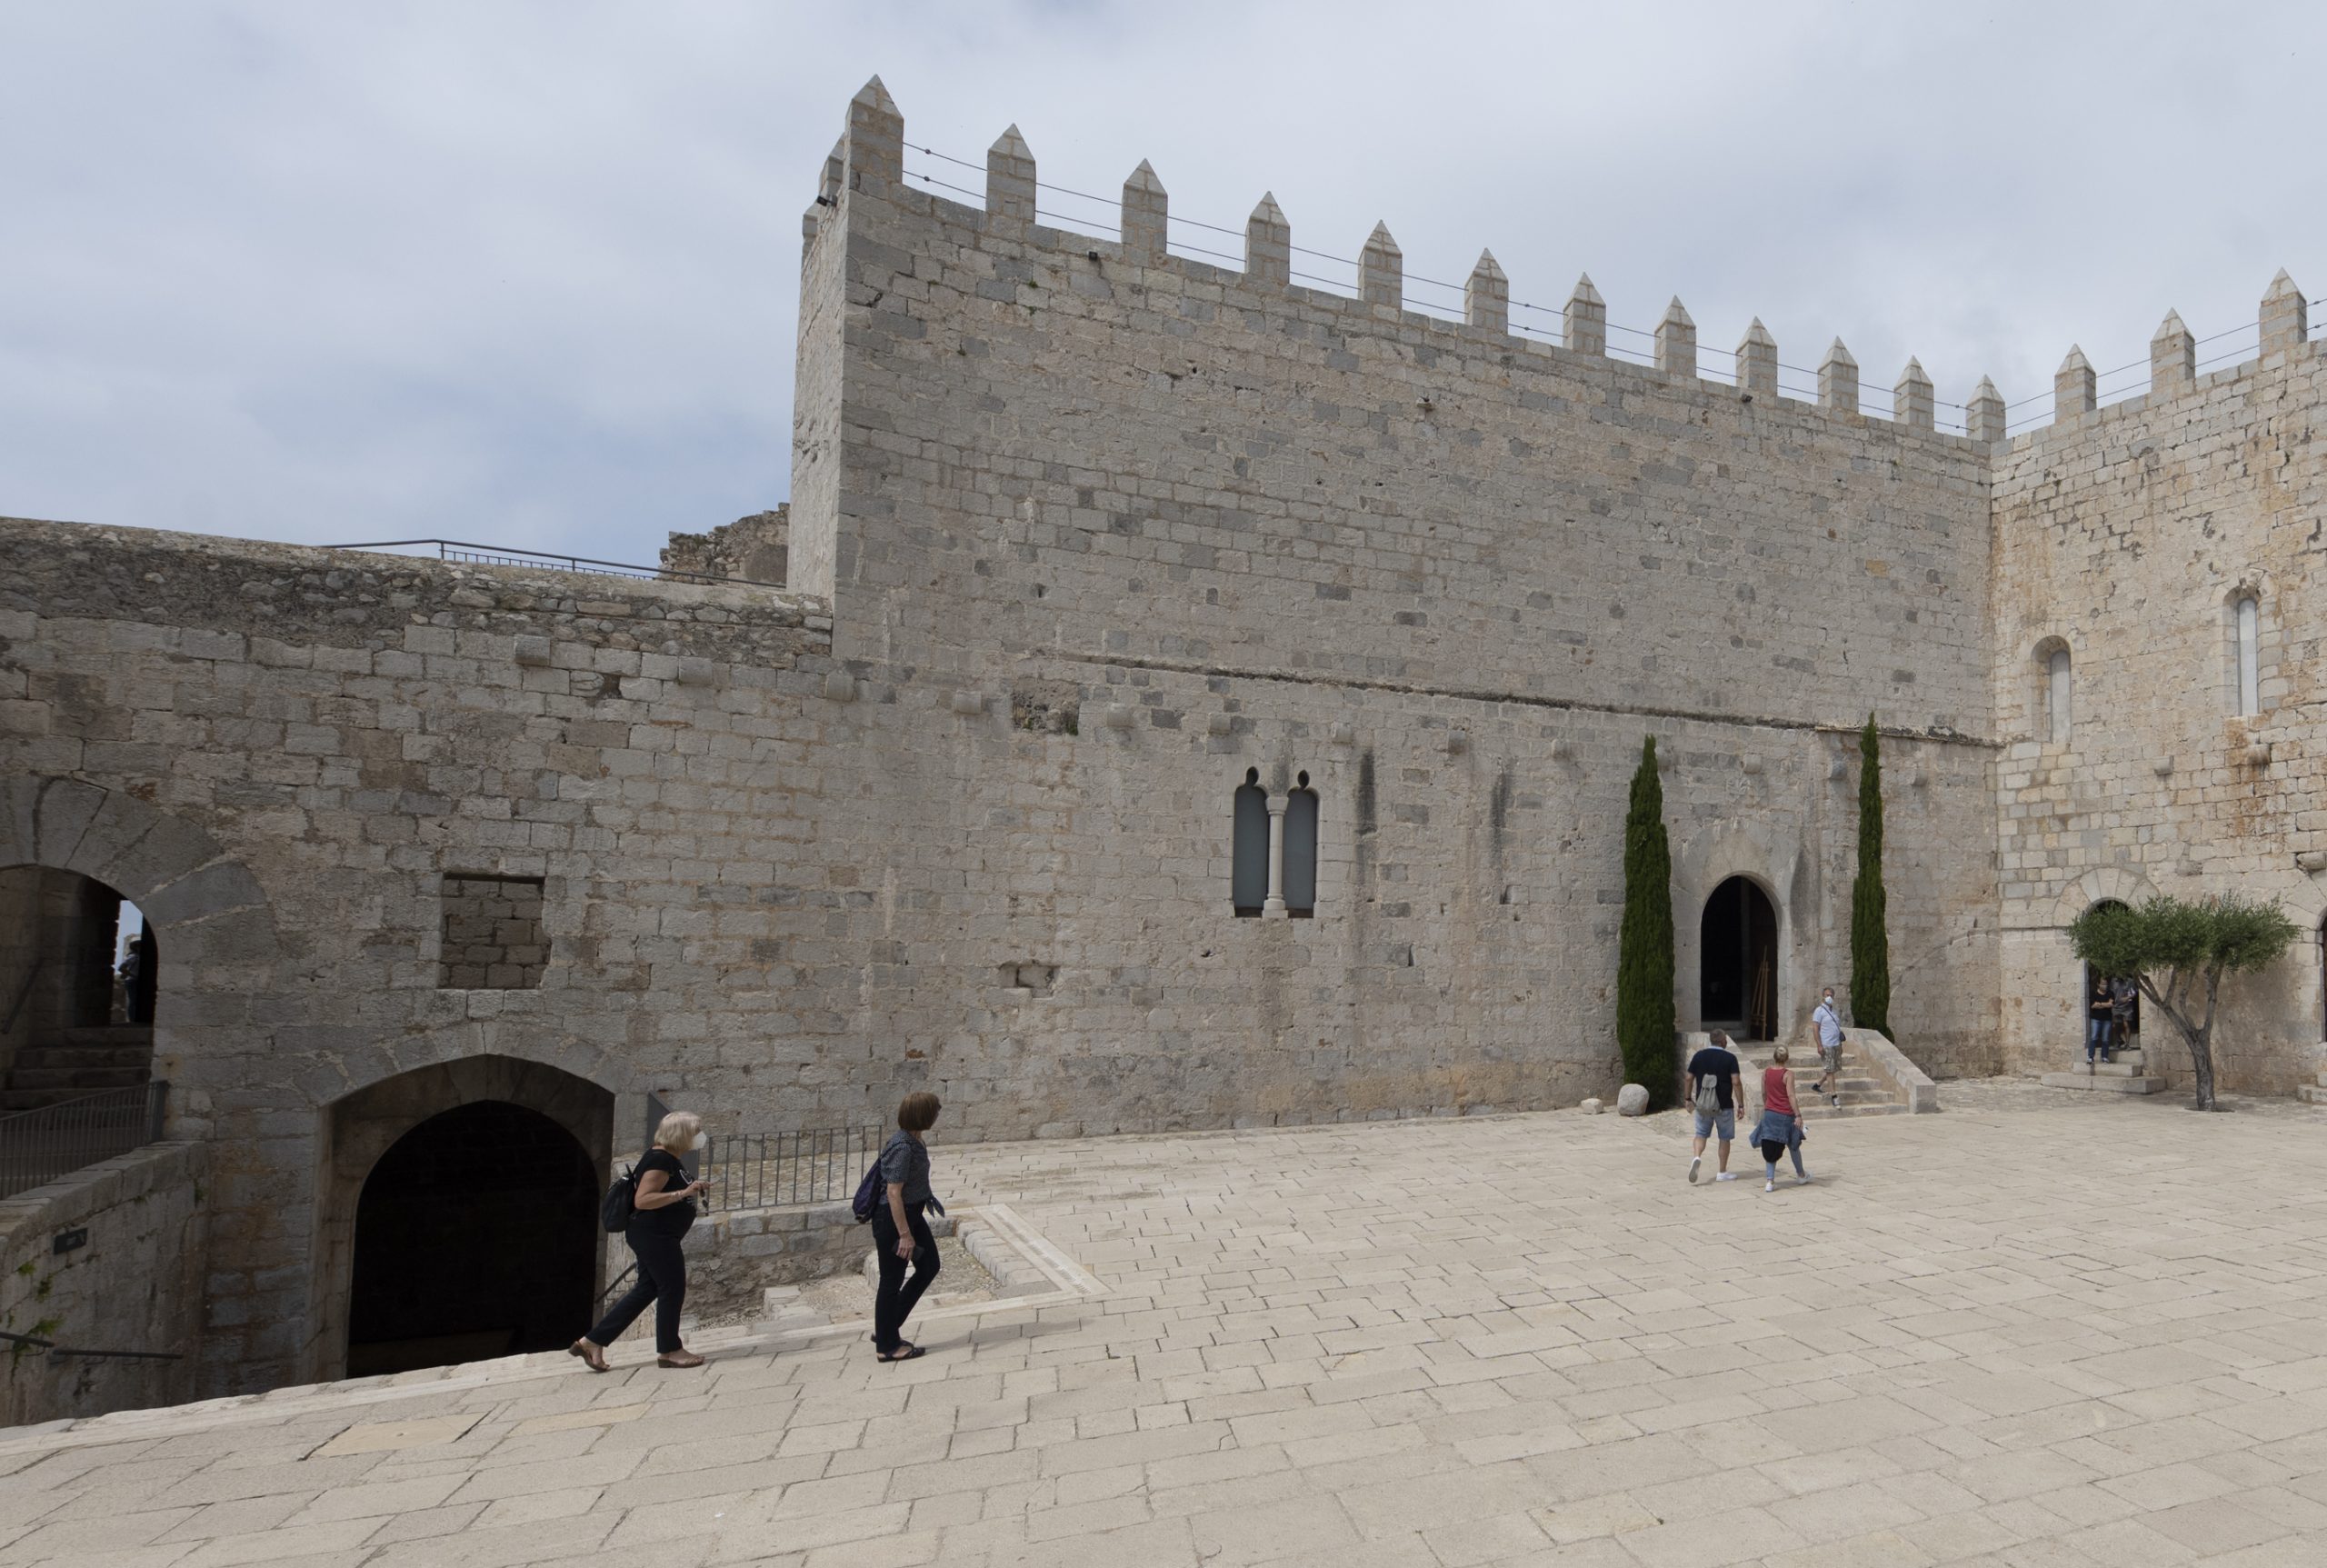 La Diputación de Castellón invierte 466.000 euros en el equipamiento expositivo del Castillo de Peñíscola para fomentar las visitas